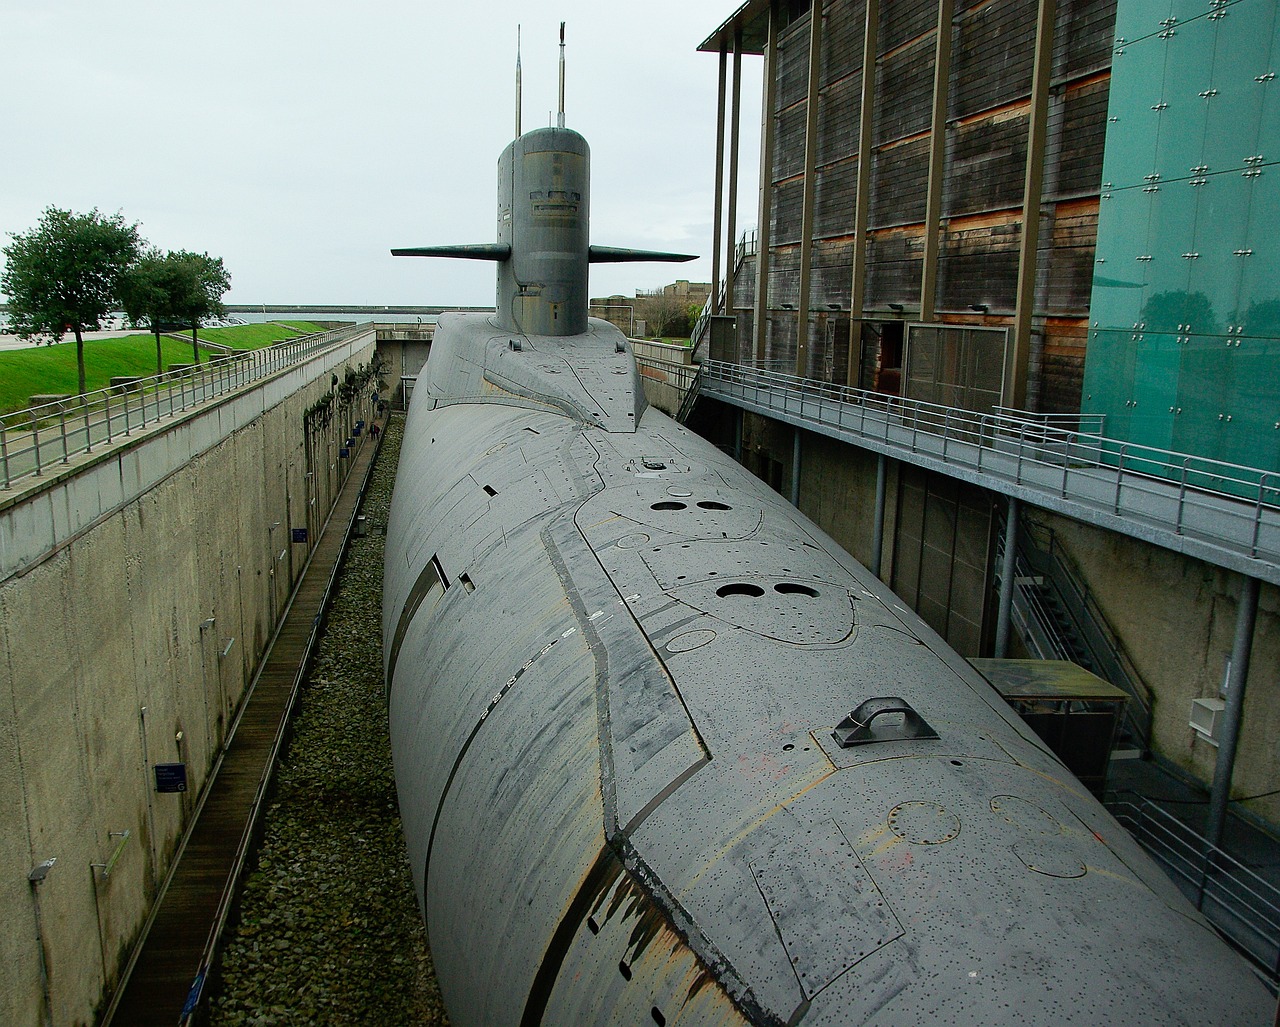 Submarine at Cité de la Mer, Cherbourg, Normandy